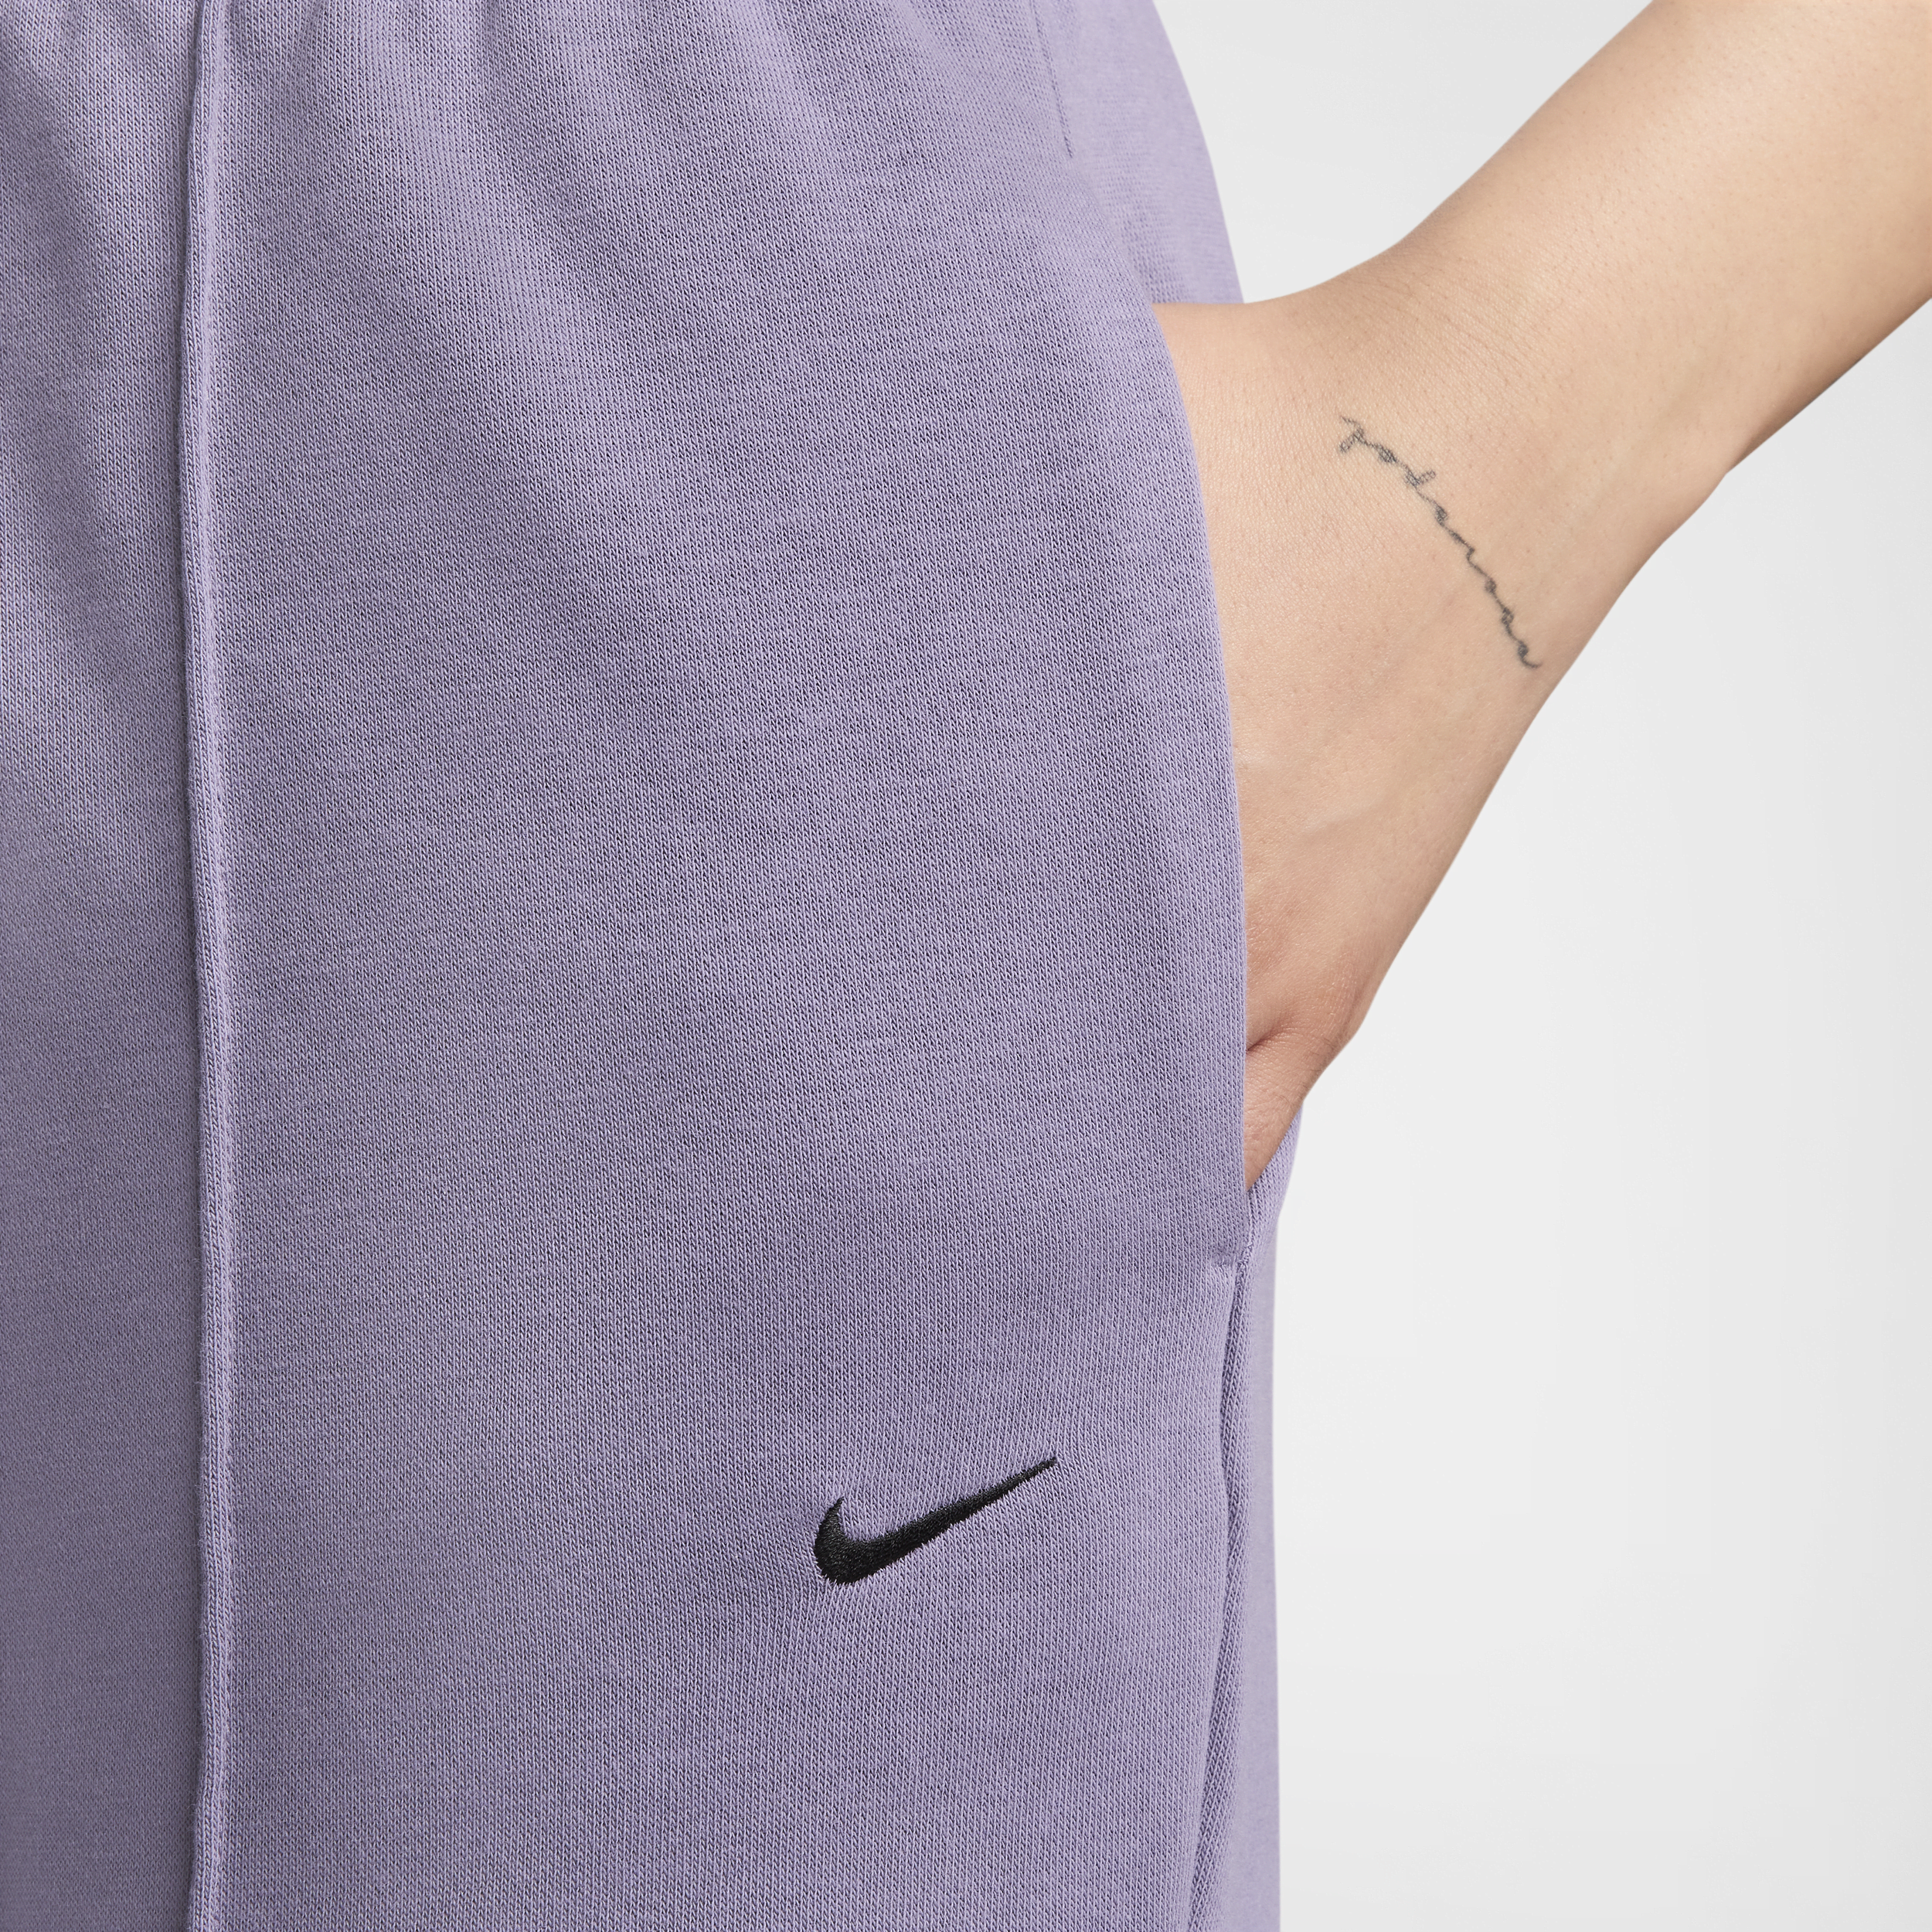 Nike Sportswear Chill Terry aansluitende joggingbroek met hoge taille van sweatstof voor dames Paars